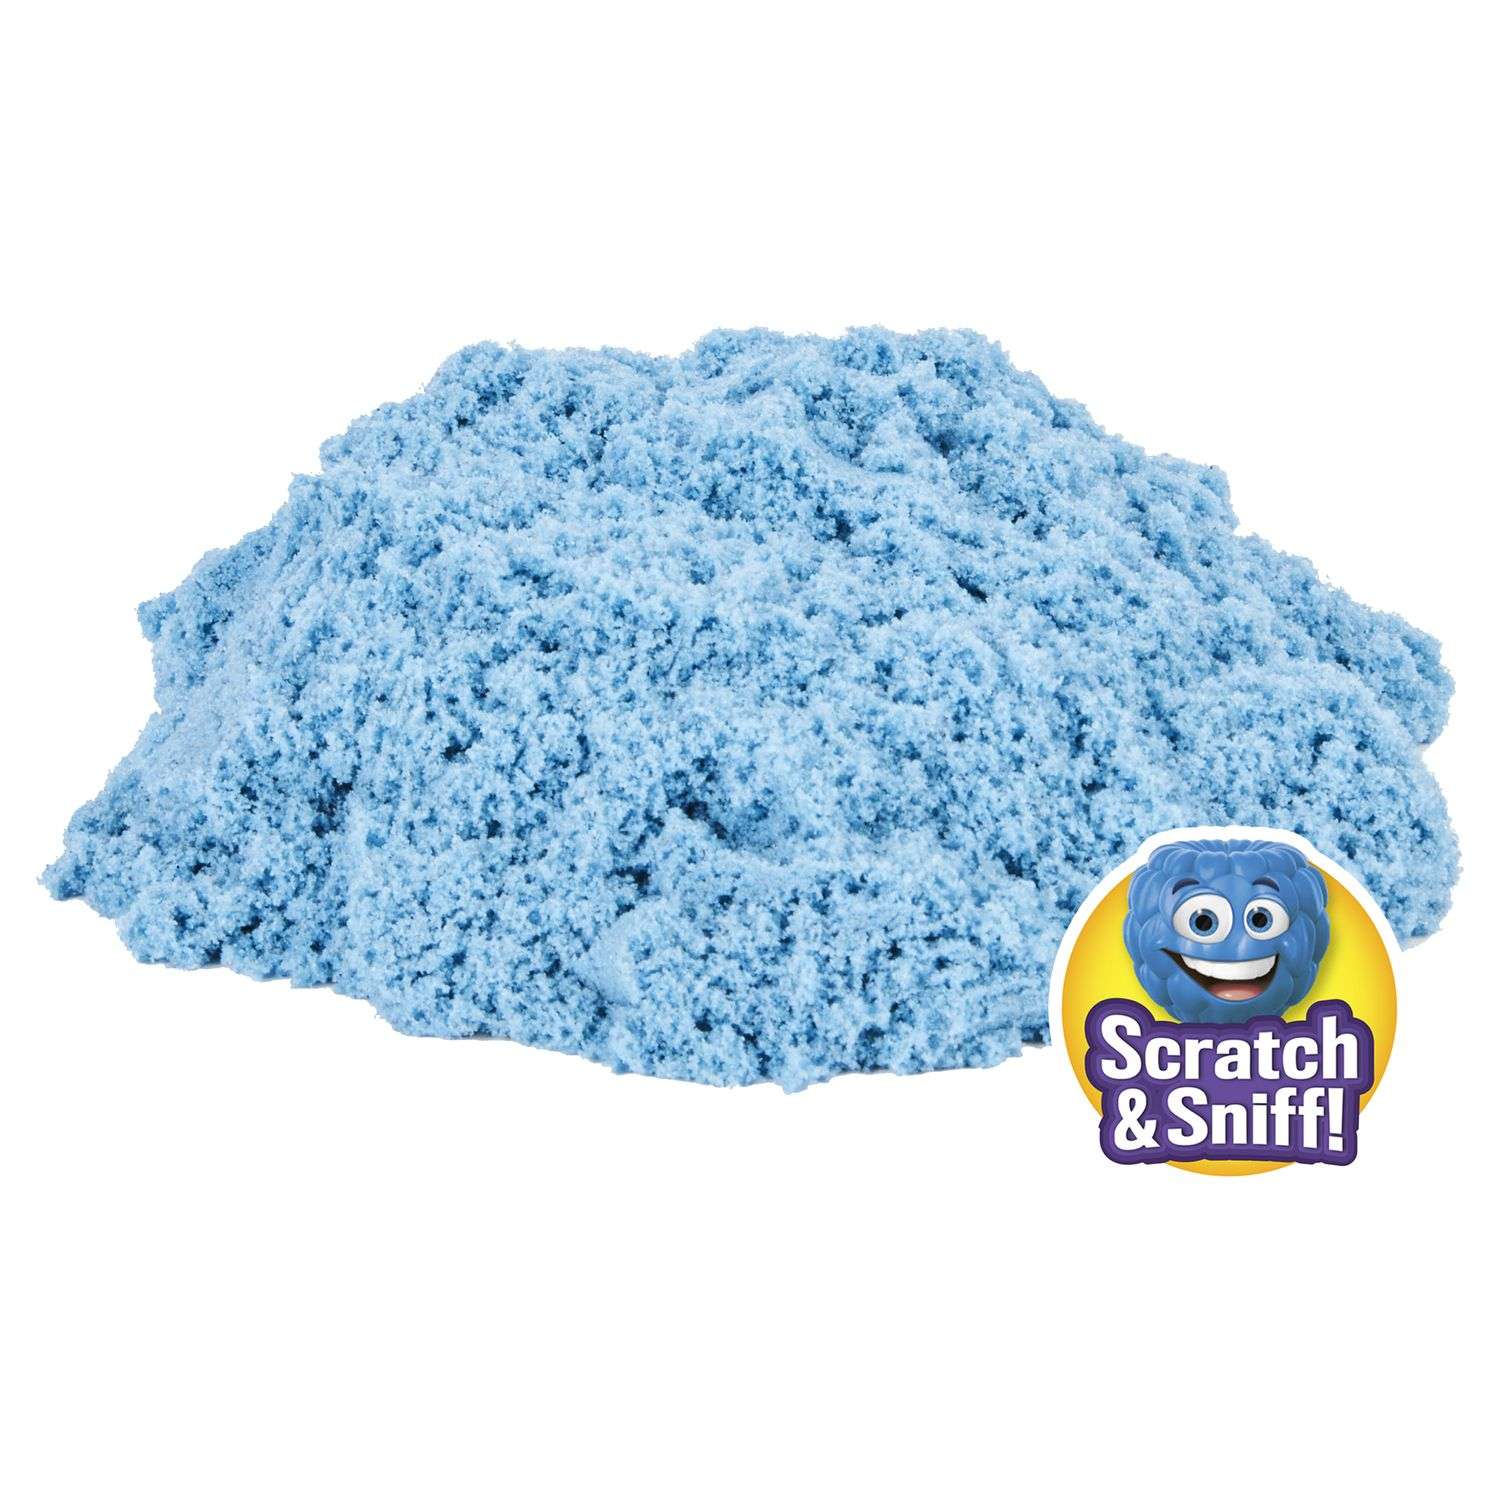 Песок для лепки Kinetic Sand Blue Rasperry ароматизированный 227г 6053900/20124654 - фото 2